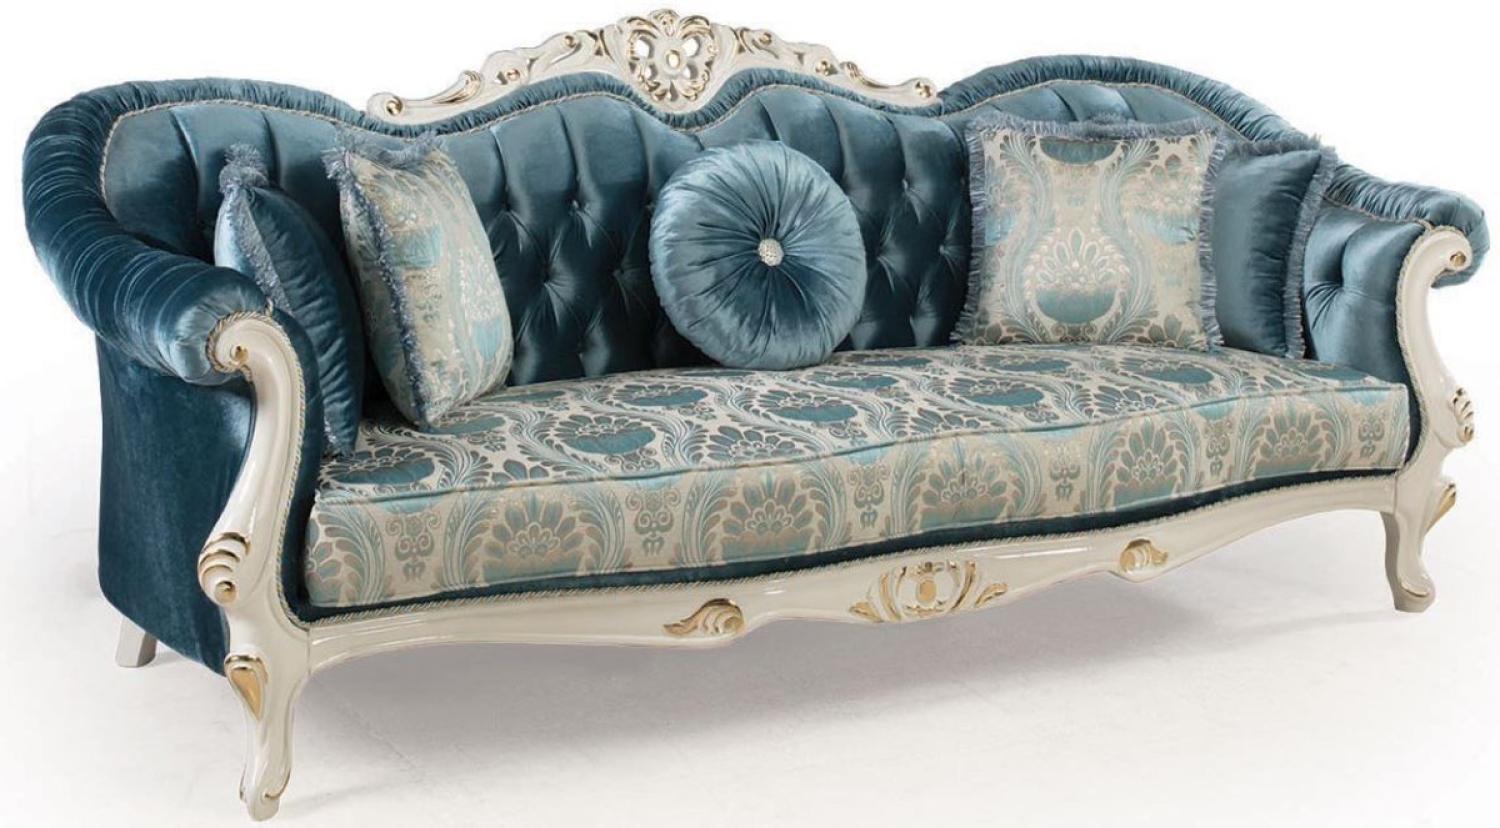 Casa Padrino Luxus Barock Wohnzimmer Sofa mit Kissen Blau / Weiß / Gold 240 x 87 x H. 99 cm - Barock Möbel - Edel & Prunkvoll Bild 1